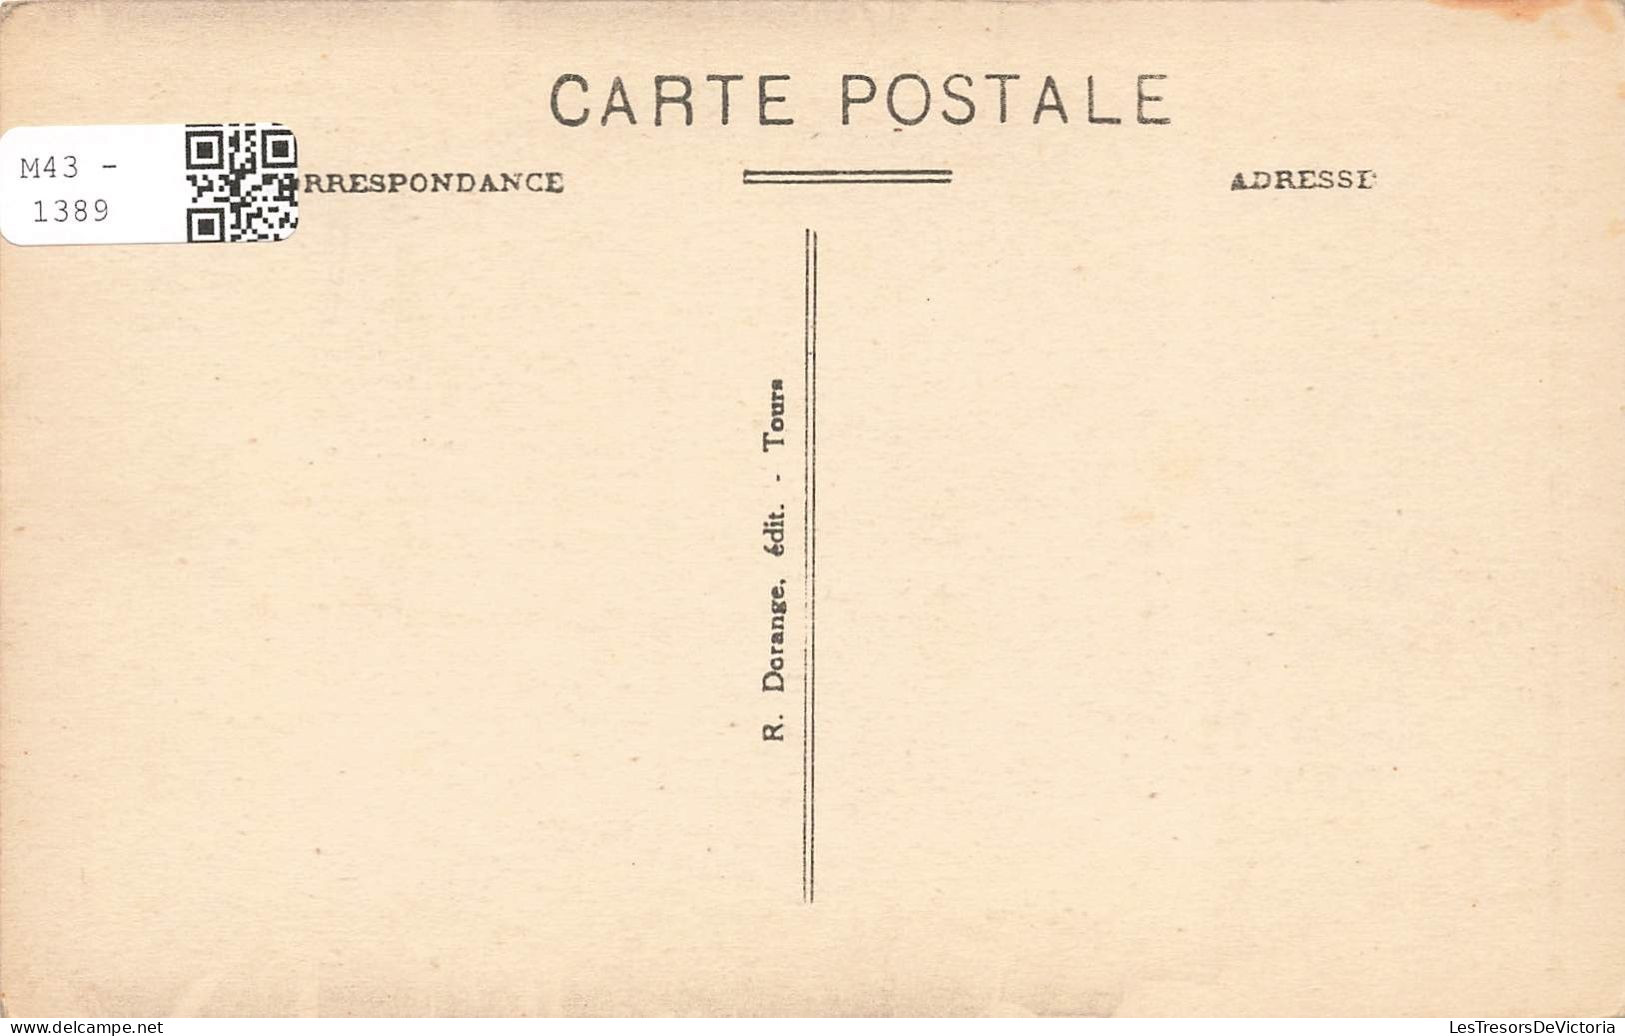 FRANCE - Langeais - Le Château - Côté Nord - Carte Postale Ancienne - Langeais